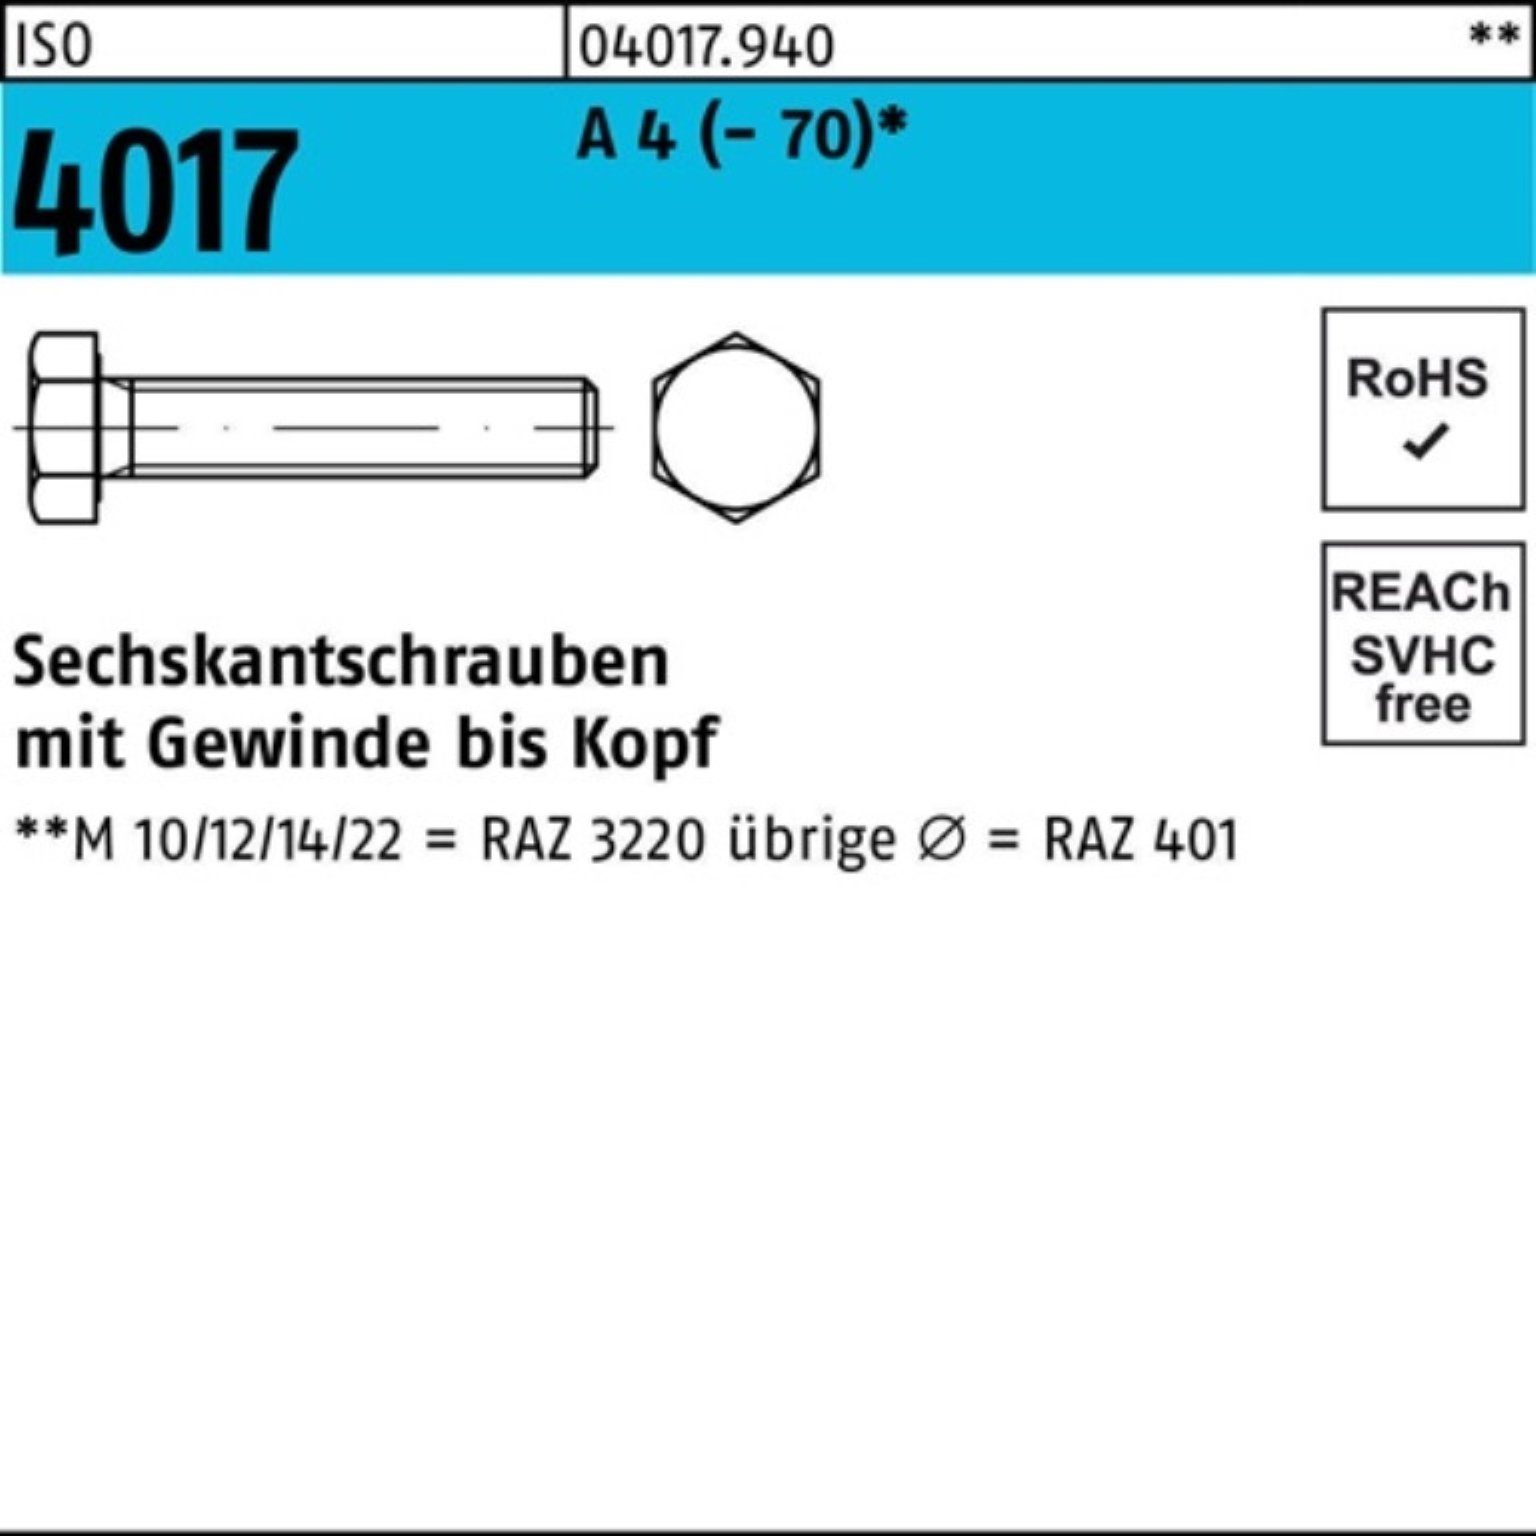 Bufab Sechskantschraube 100er Pack 4 Sechskantschraube Stück A VG 100 M22x (70) 4017 ISO 10